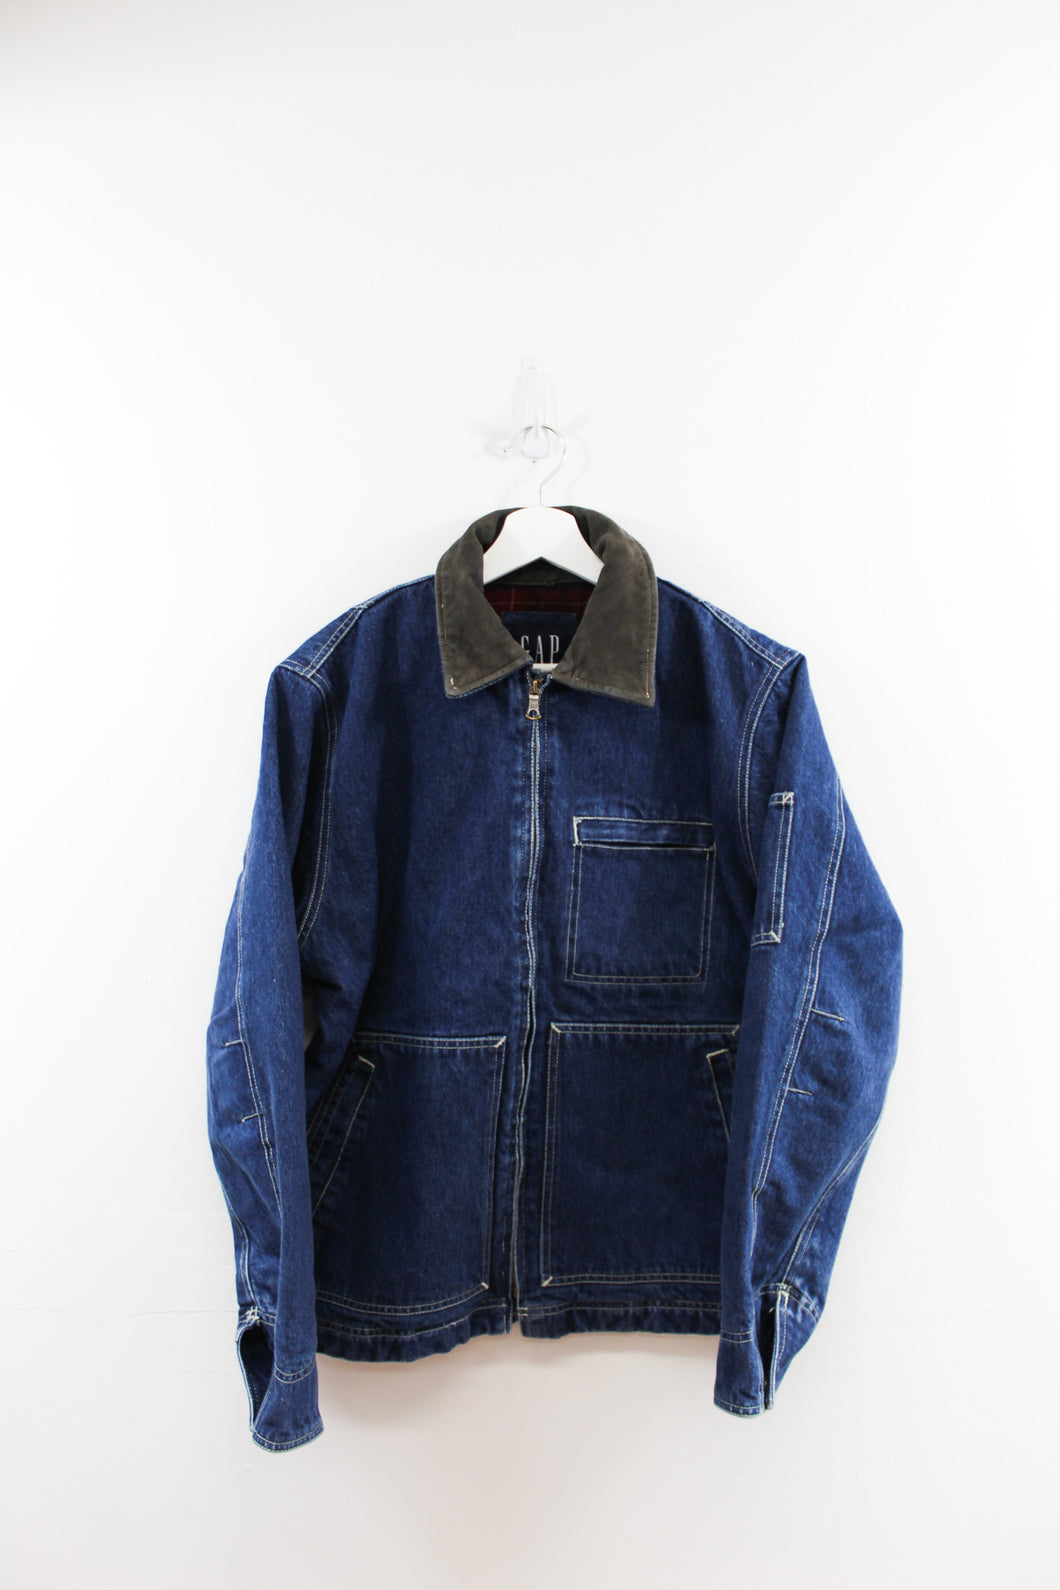 Vintage Gap 90s blanket lined Lined Denim Zip Up Jacket